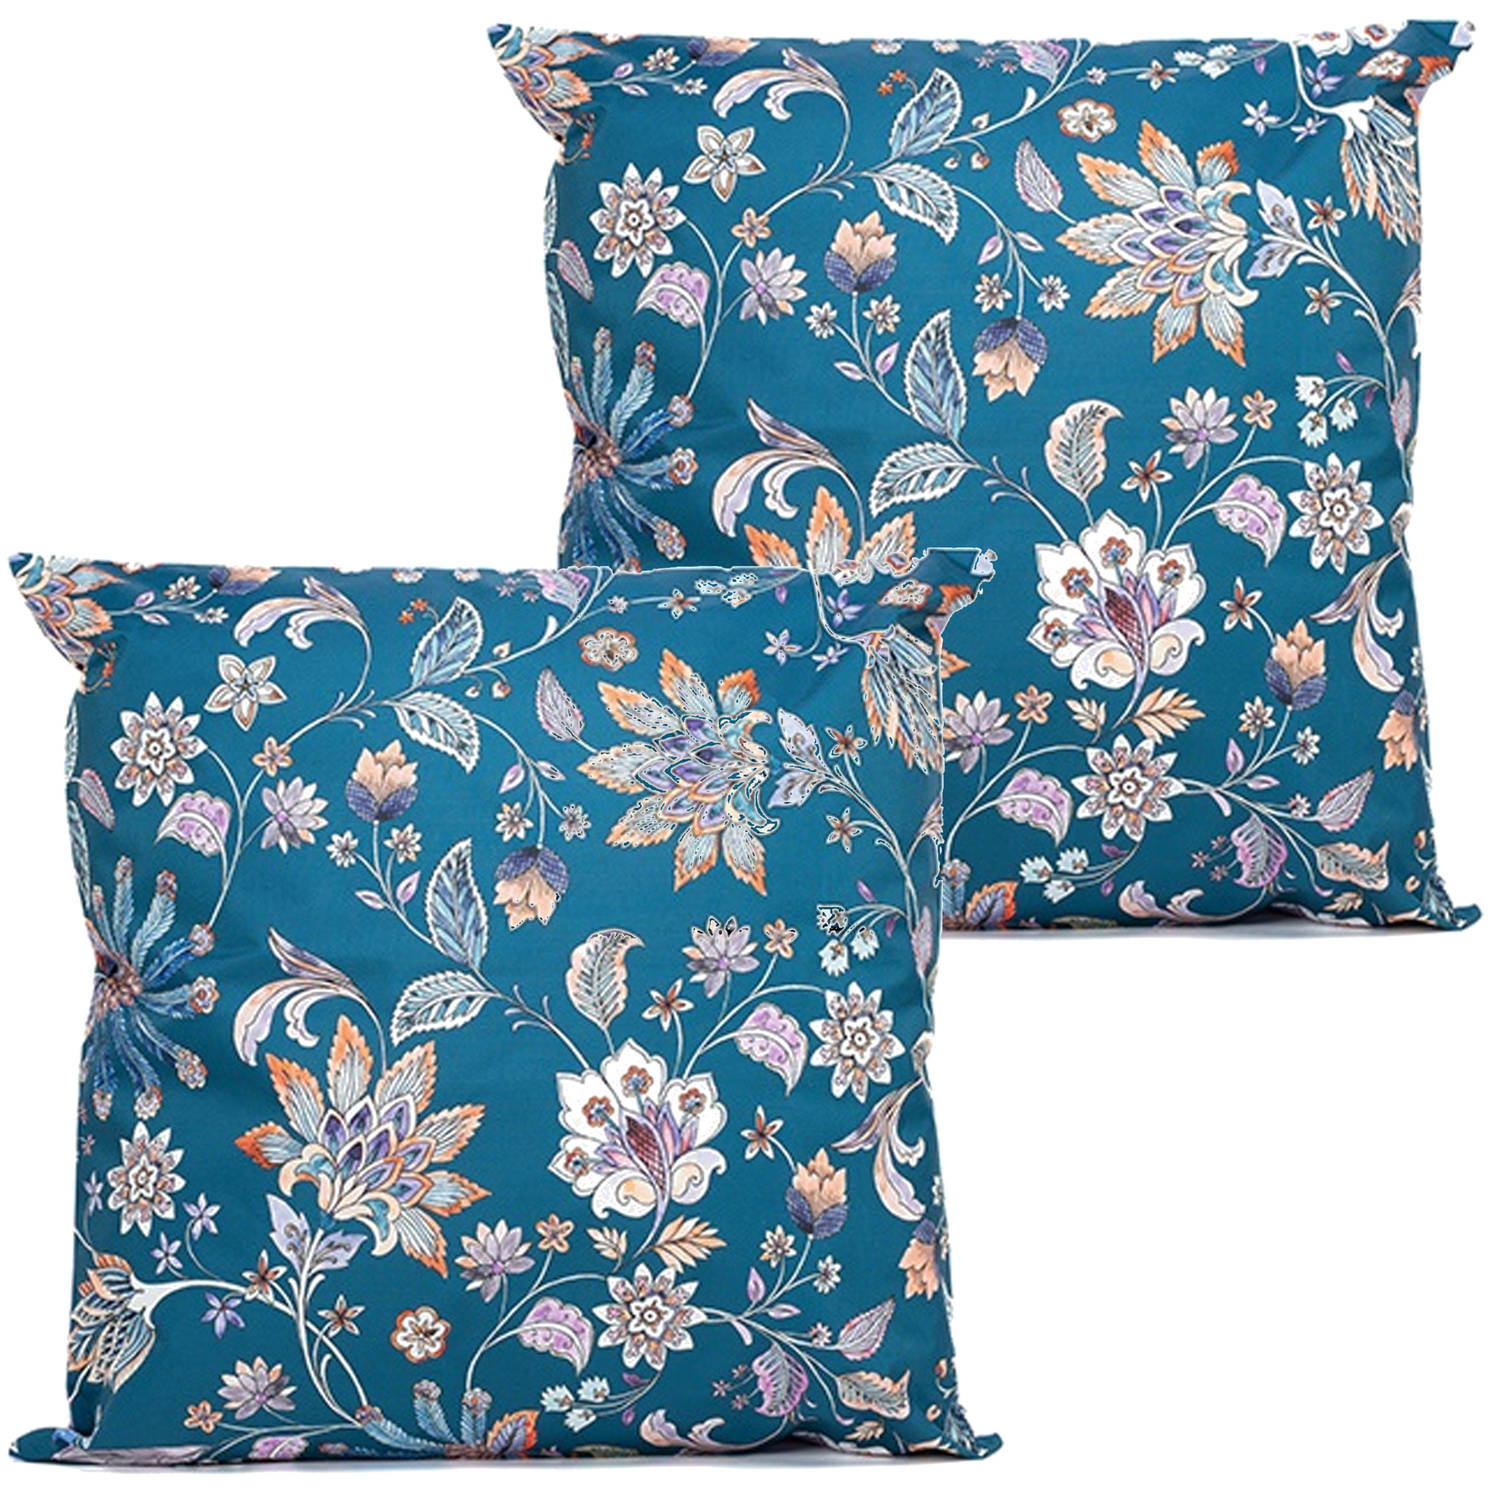 Anna's collection buitenkussen bloem - 2x - blauw/paars - 60 x 60 cm - tuinstoelkussens